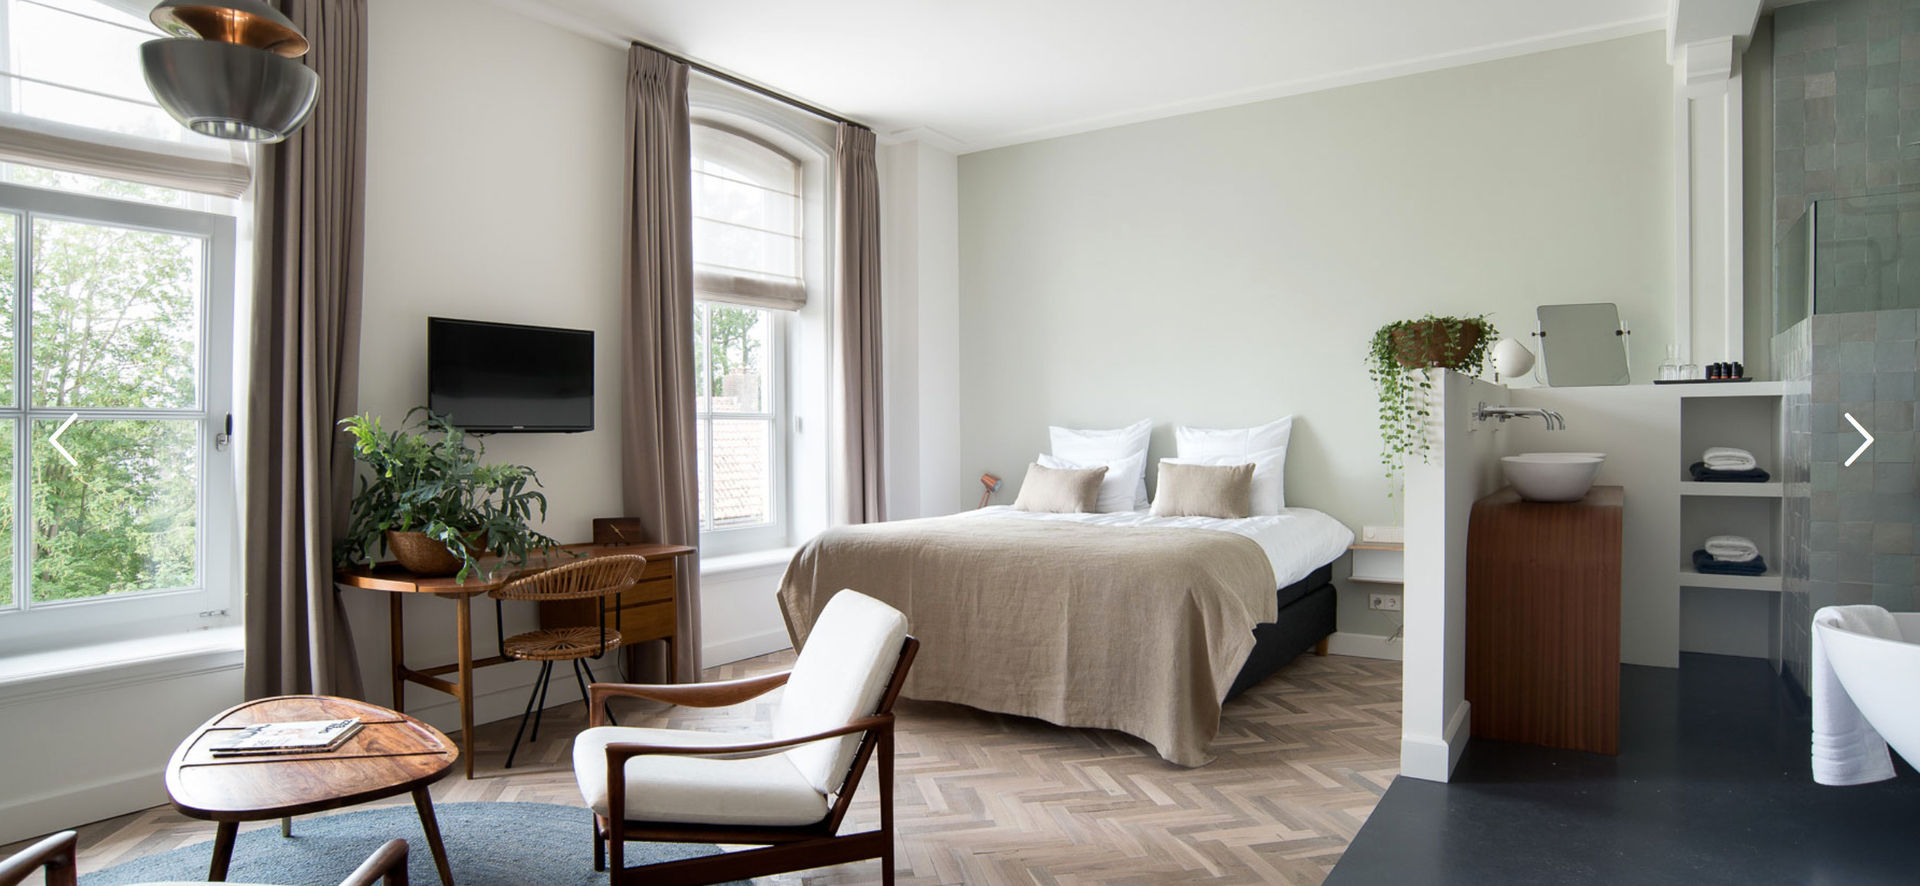 Hotel inrichting Abcoude, MARIEKKE vintage MARIEKKE vintage Scandinavian style bedroom Accessories & decoration